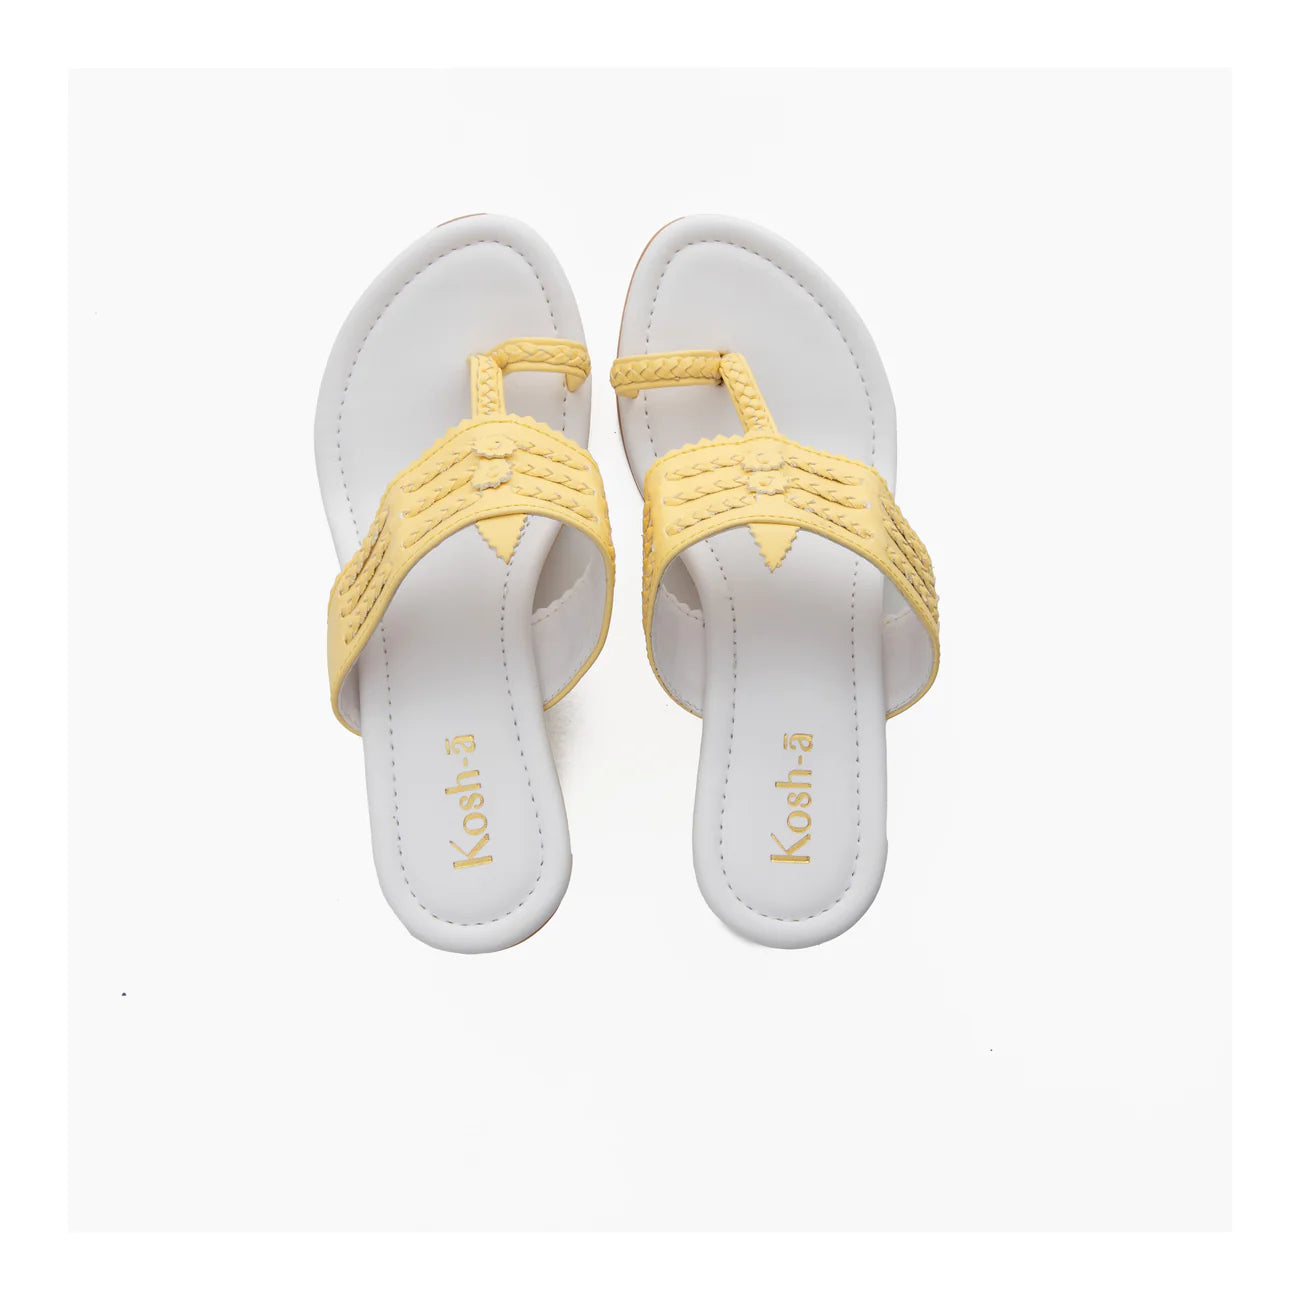 yellow and white block heel sandals